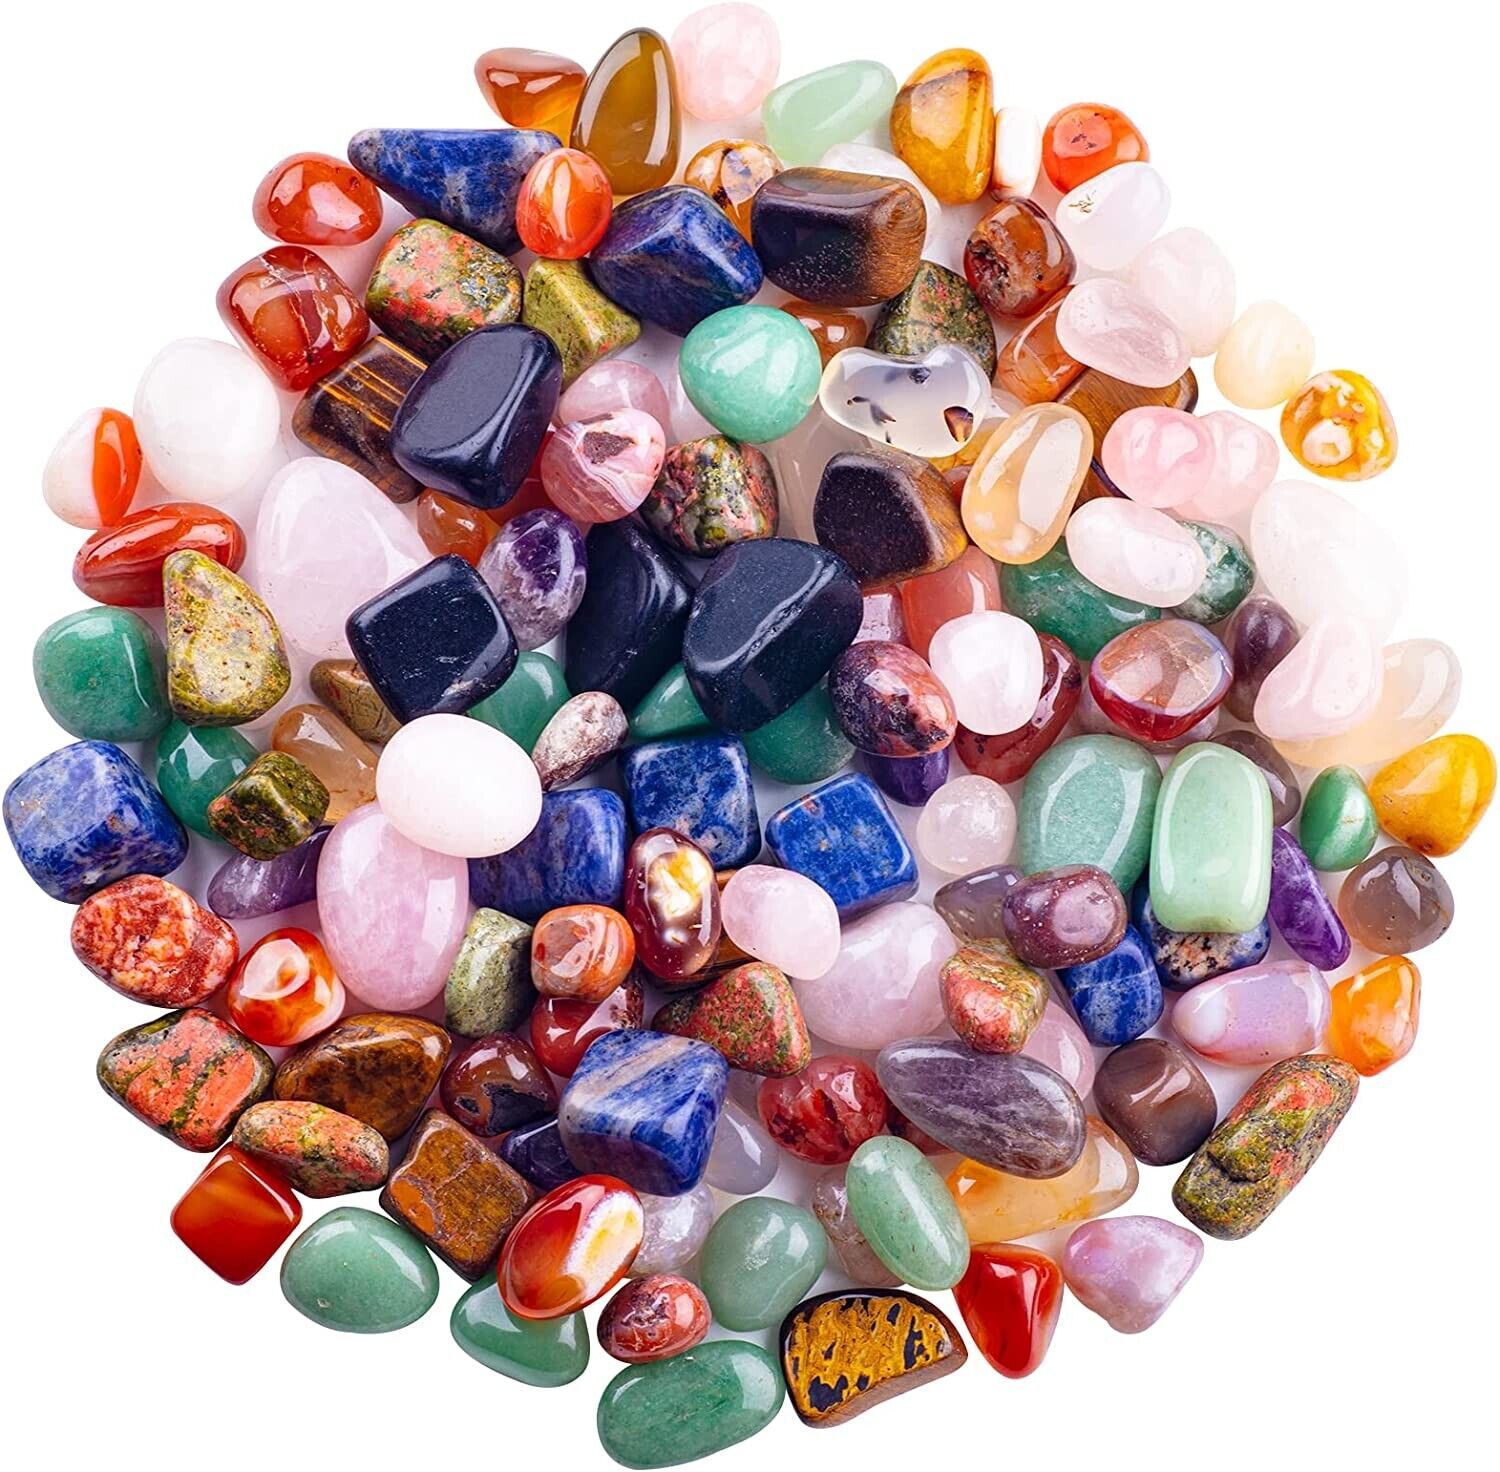 Treasure Bag of Polished Genuine Gemstones ( Over 1/4 lb.)